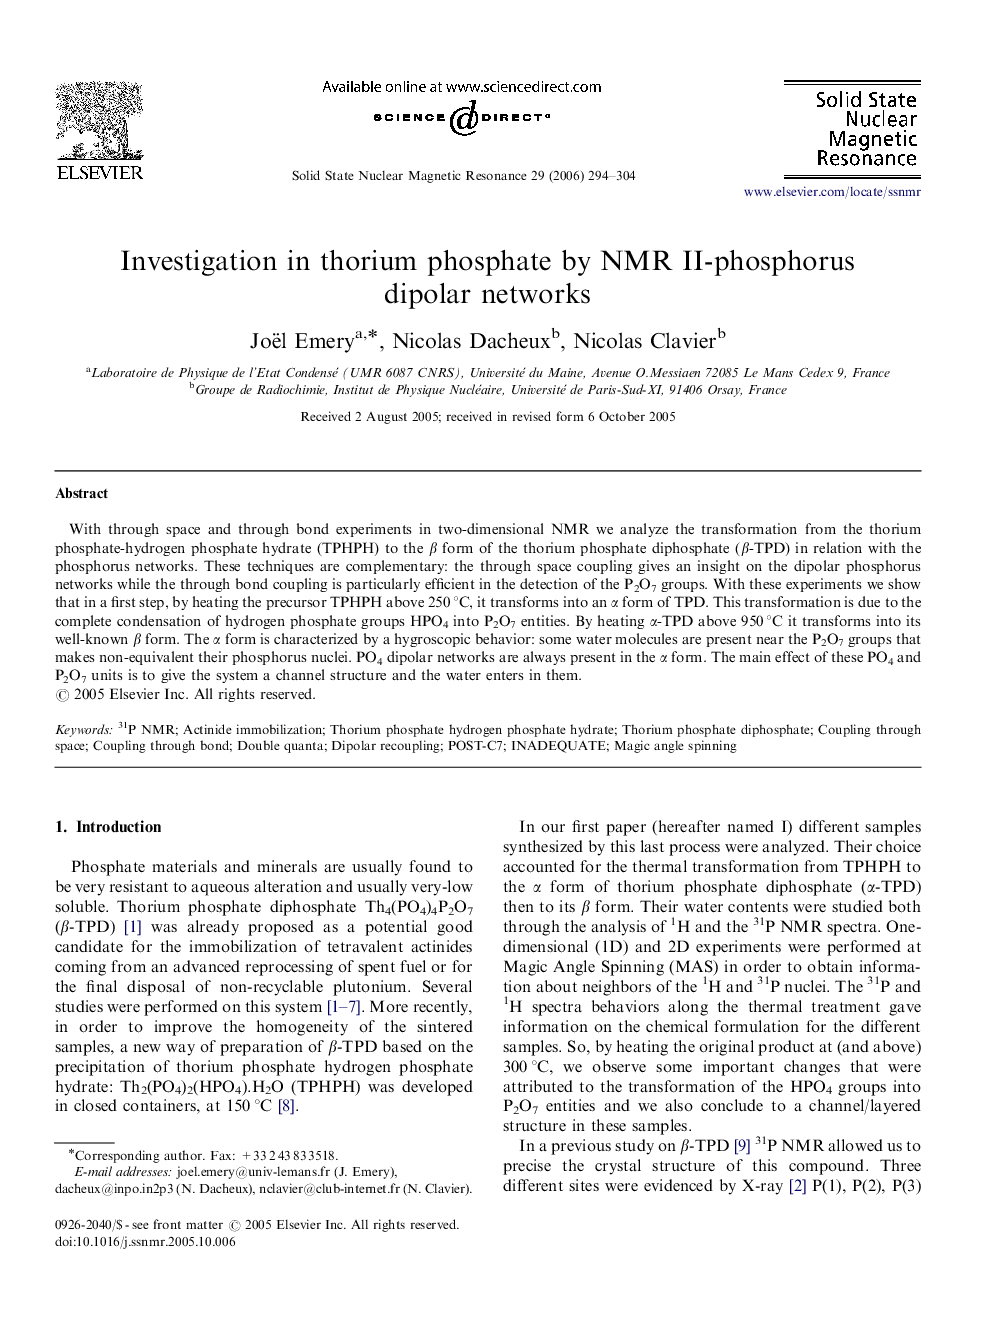 Investigation in thorium phosphate by NMR II-phosphorus dipolar networks